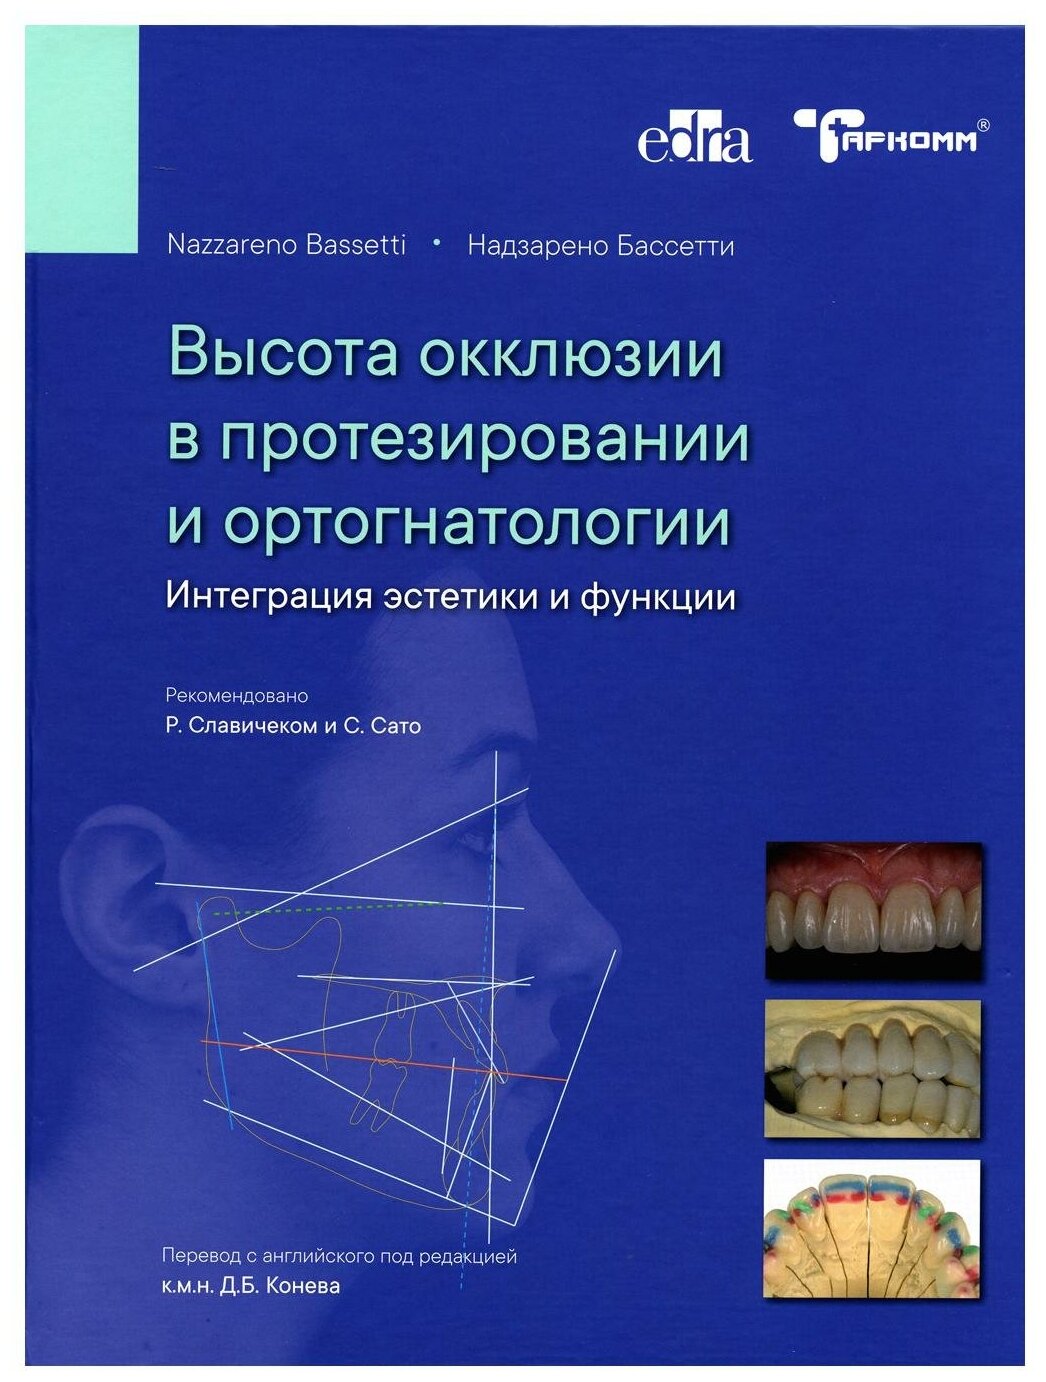 Книга Высота окклюзии в протезировании и ортогнатологии - Надзарено Бассетти - фото №1